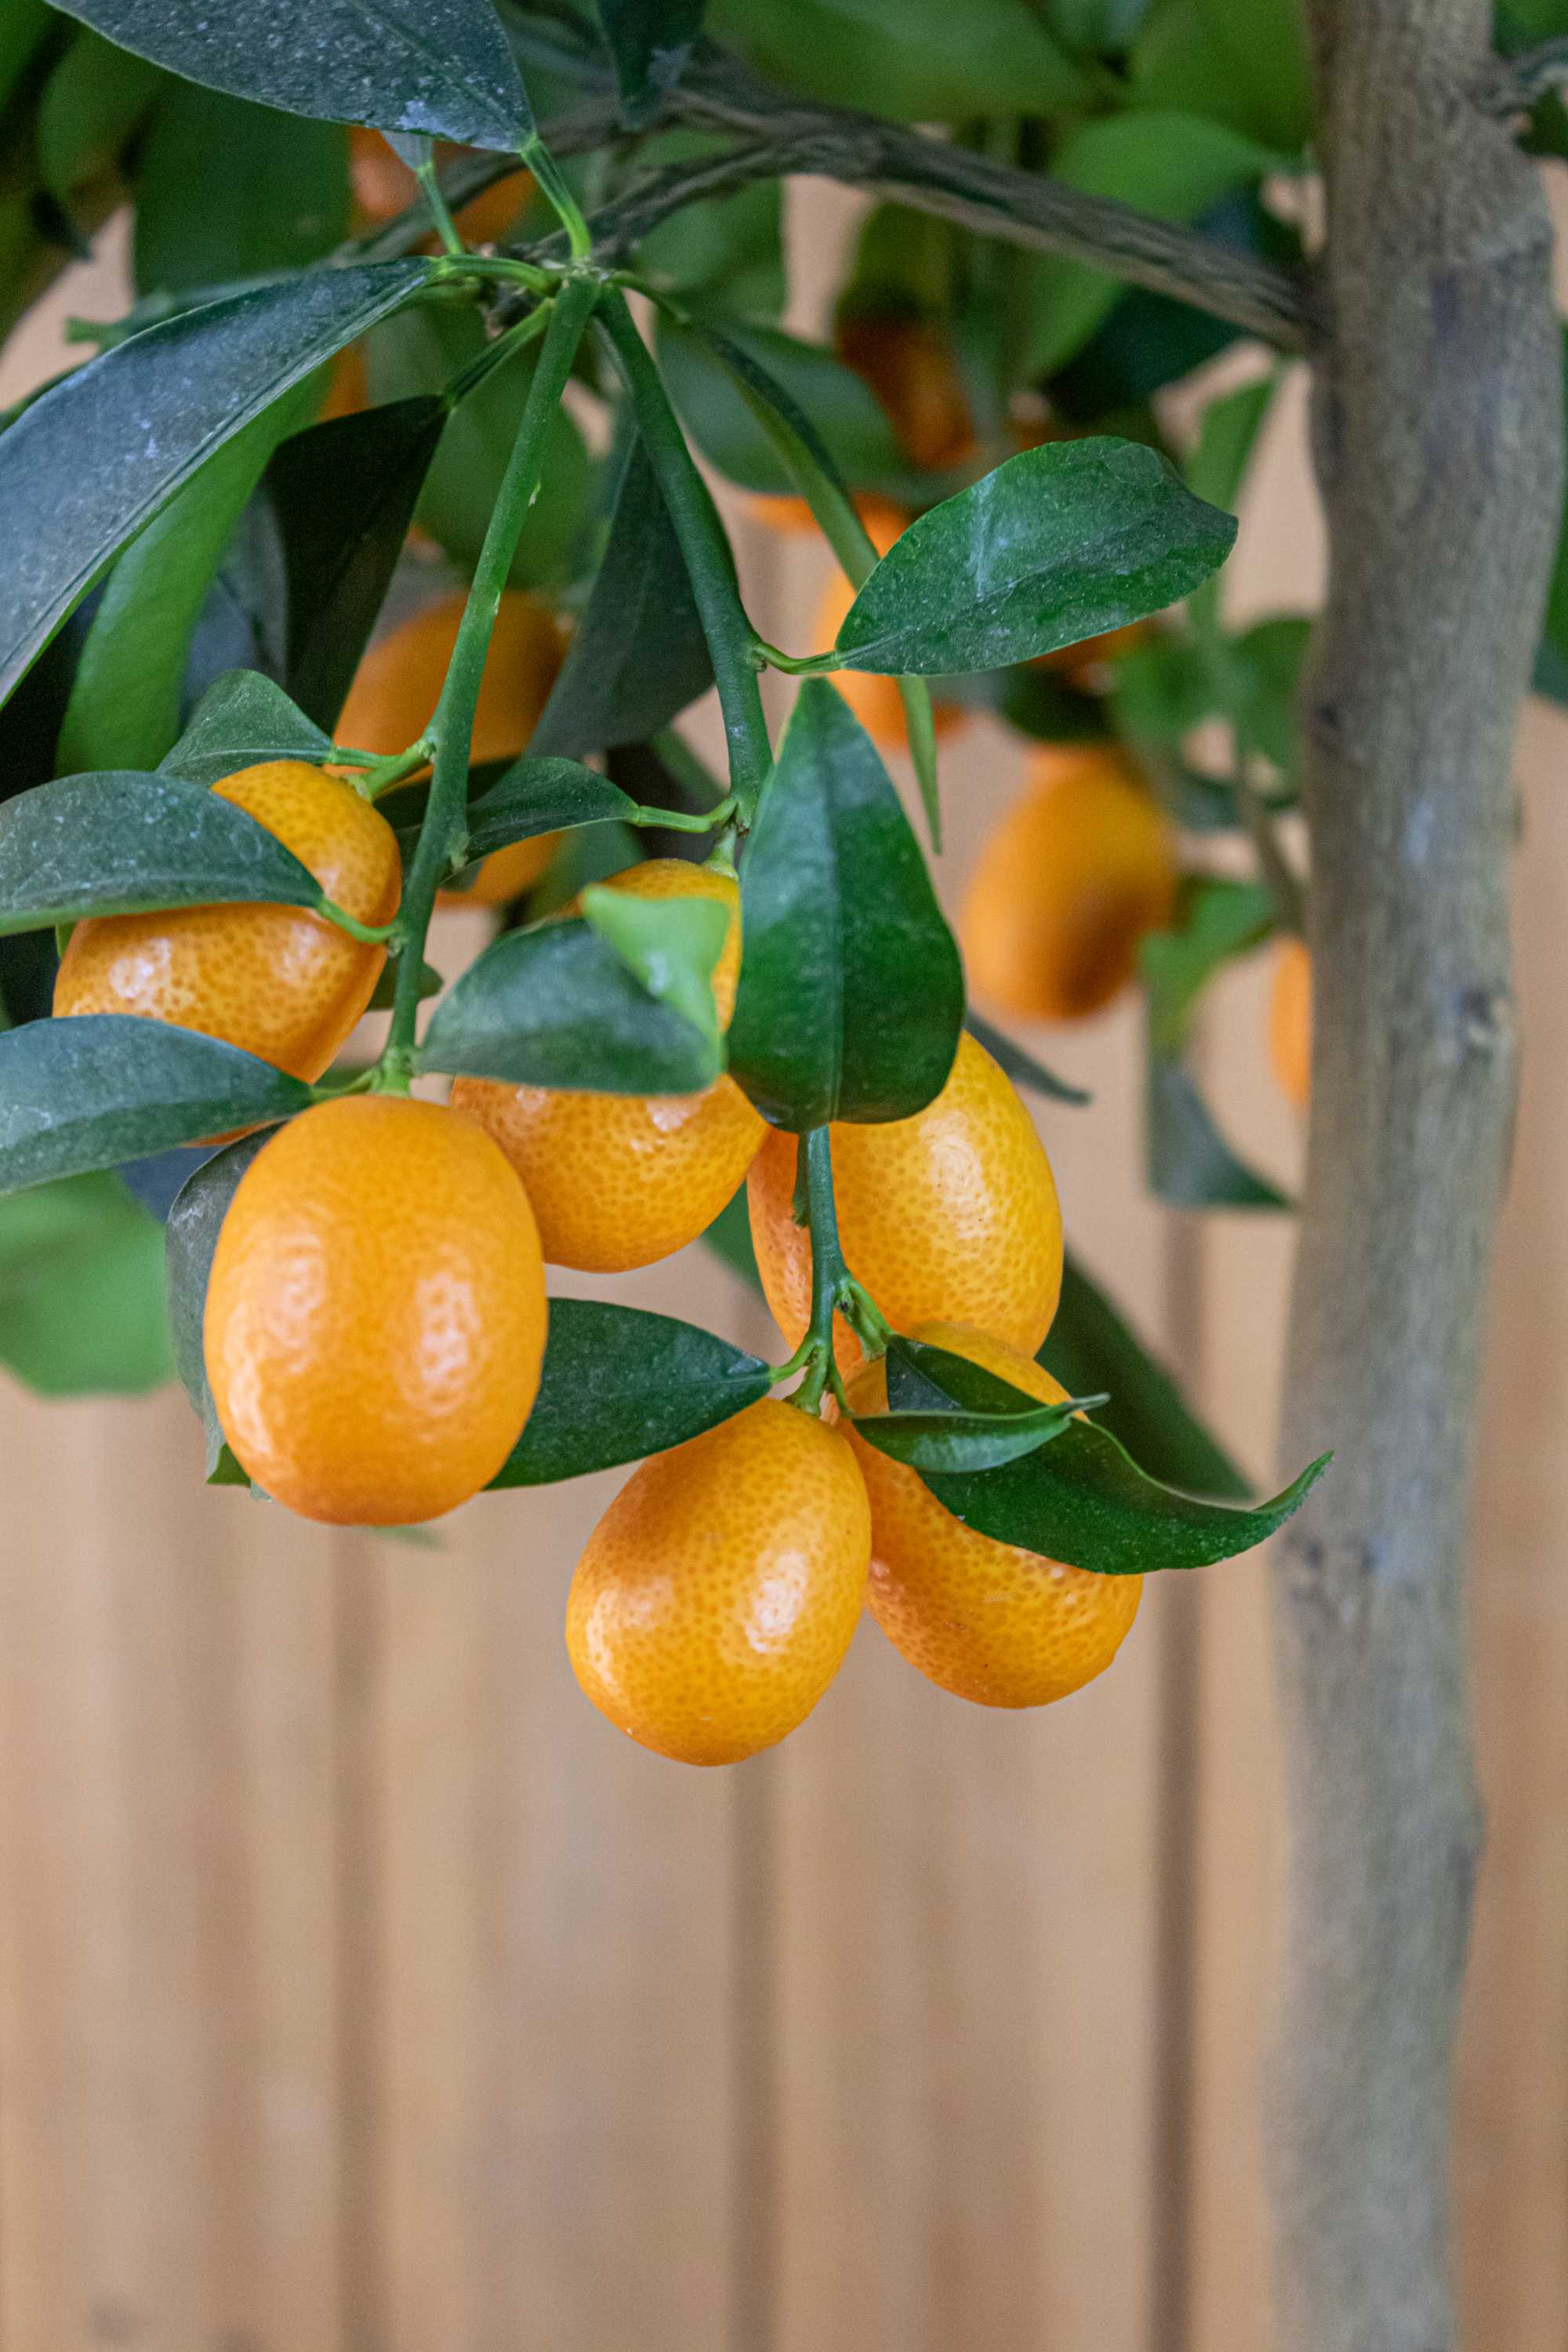 Kumquat 'Mezzo' - Citrus japonica - Fortunella